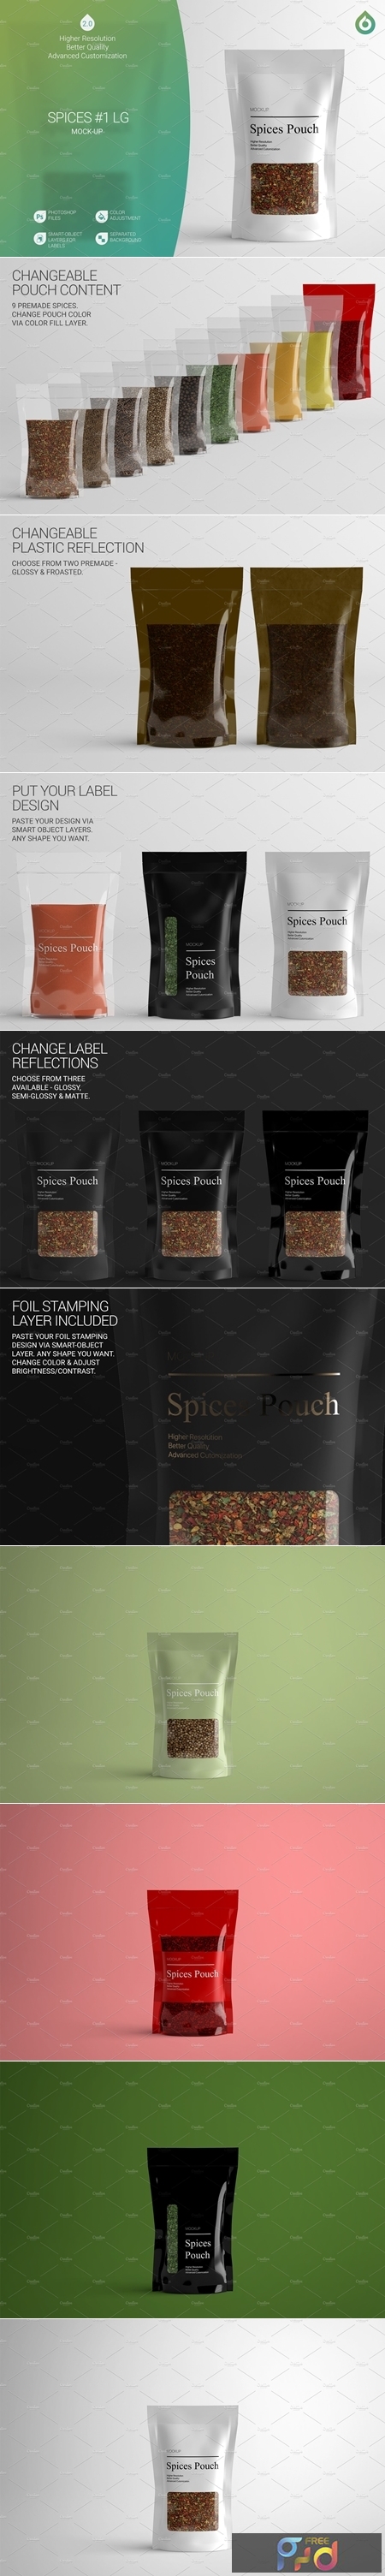 Download Spices LG Mock-Up #1 V2.0 4242530 - FreePSDvn